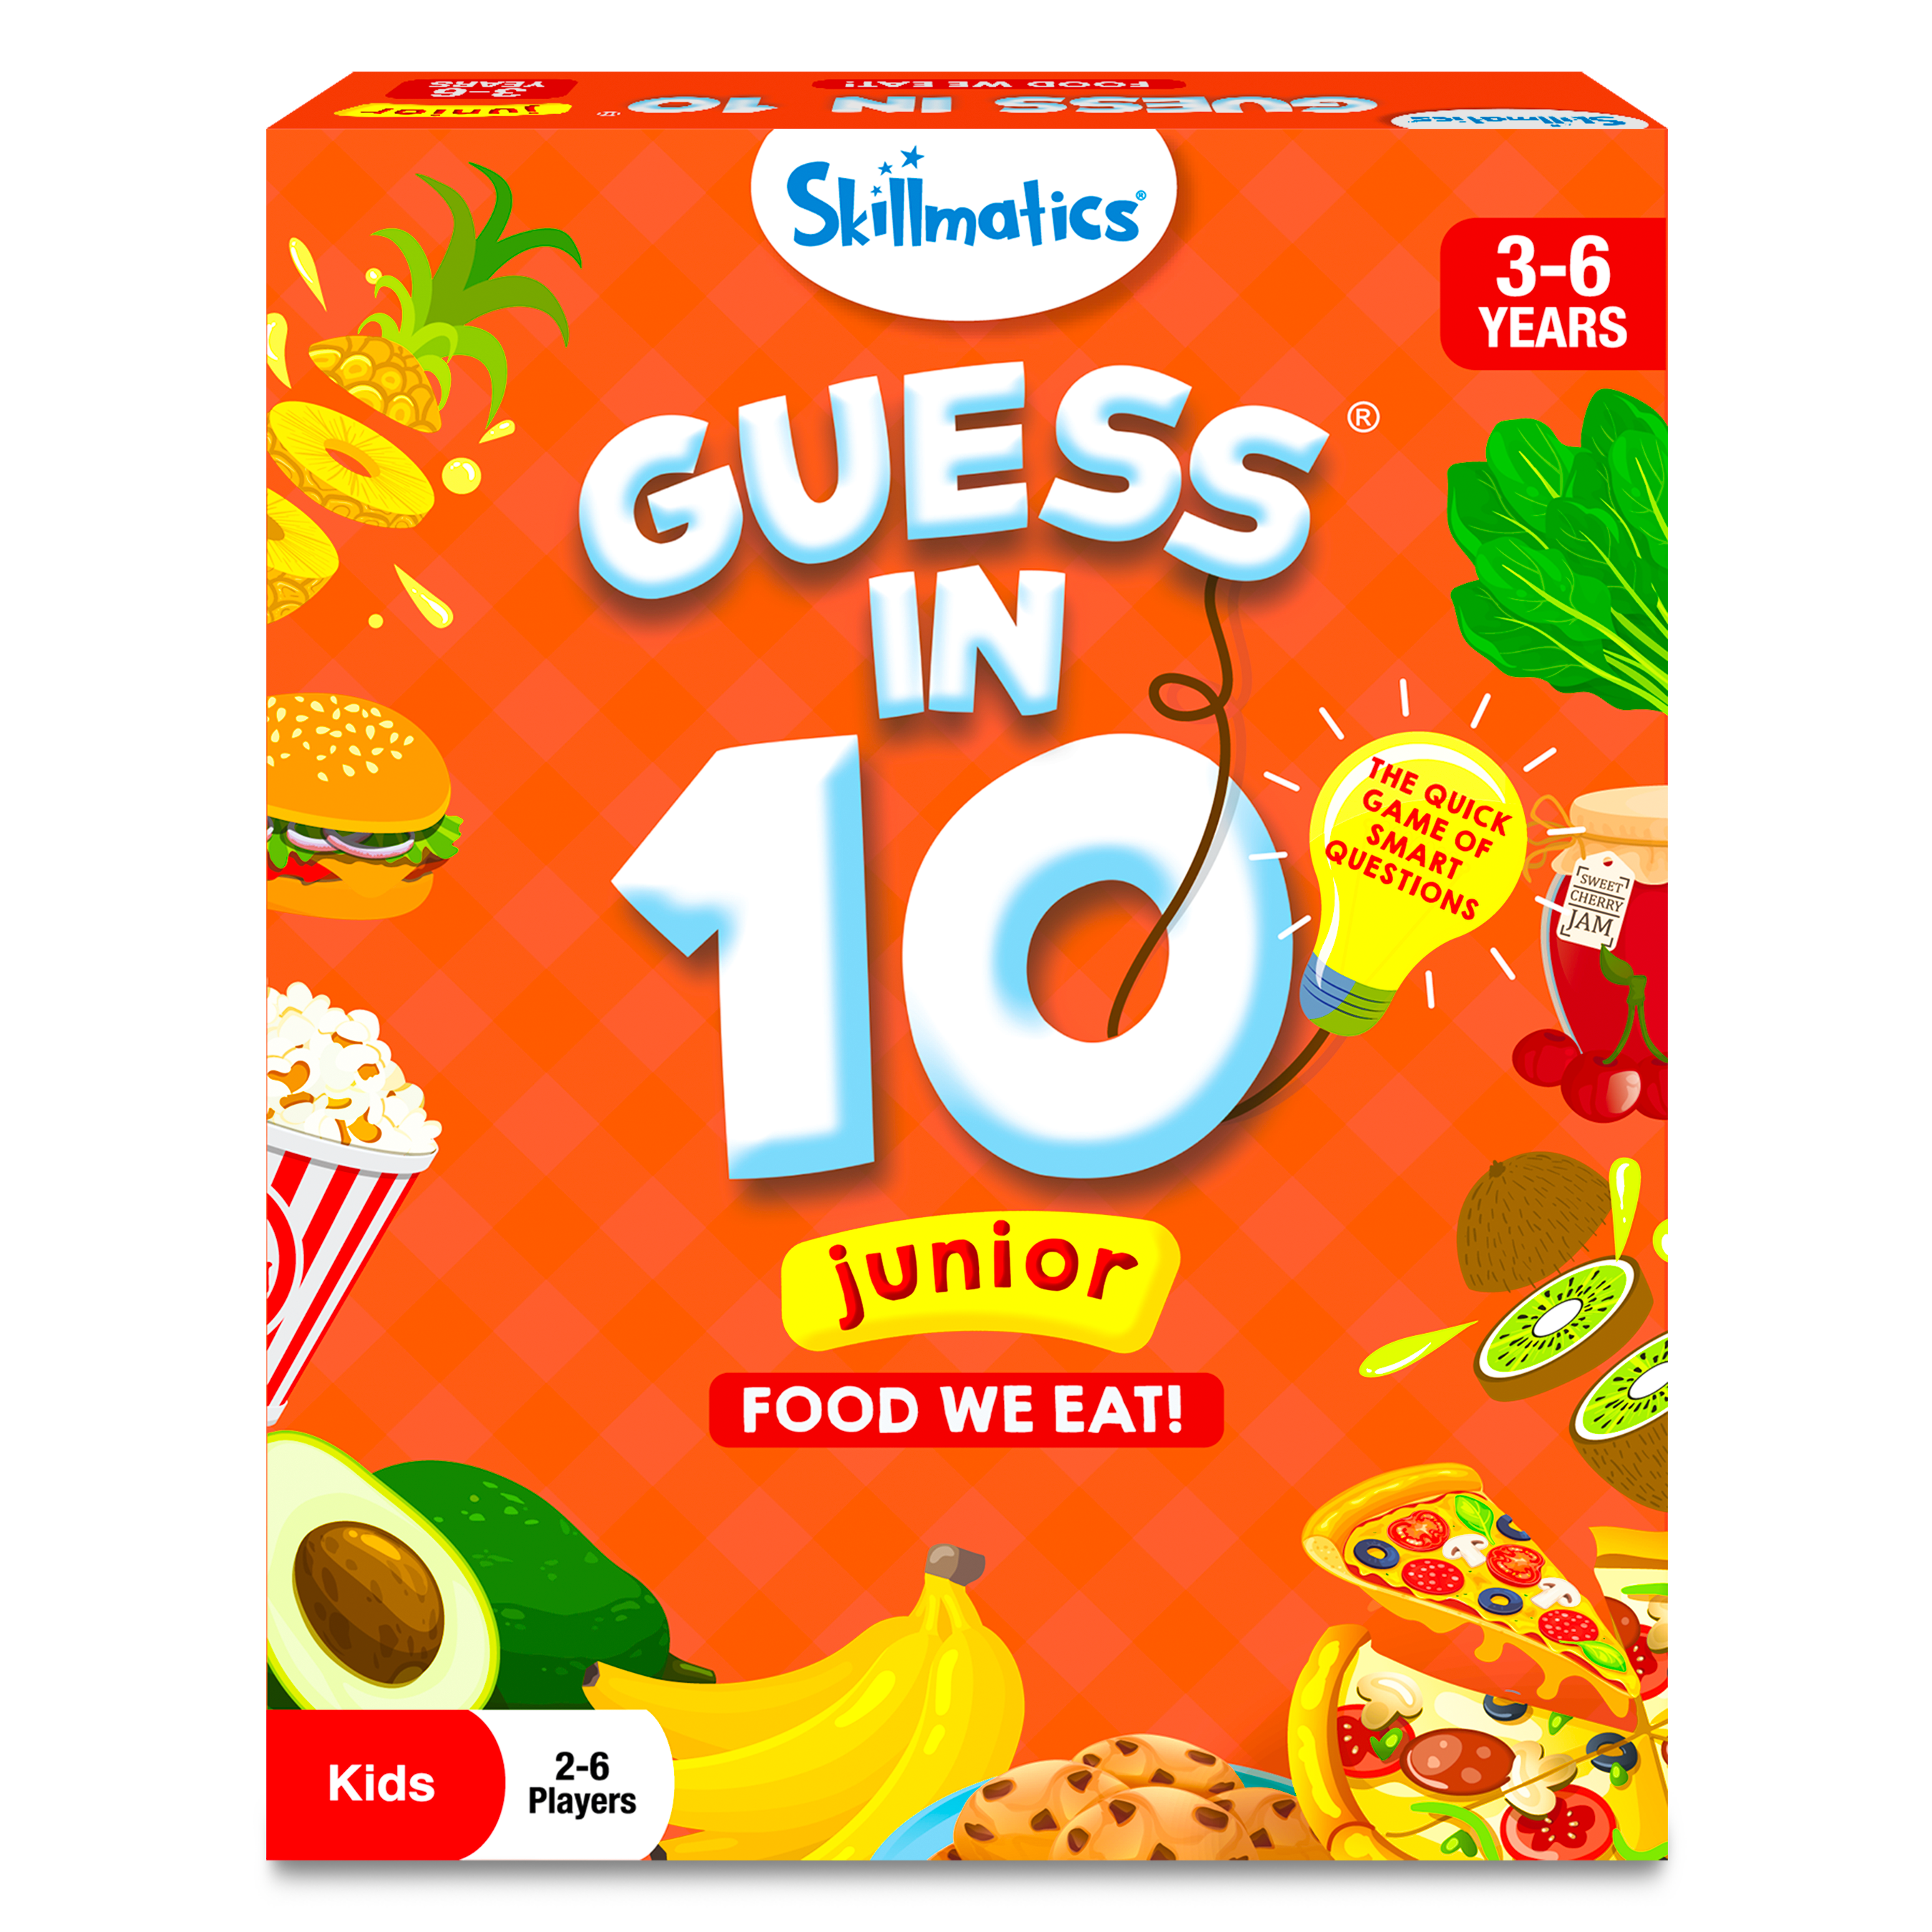 Guess in 10 Junior - Food We Eat!